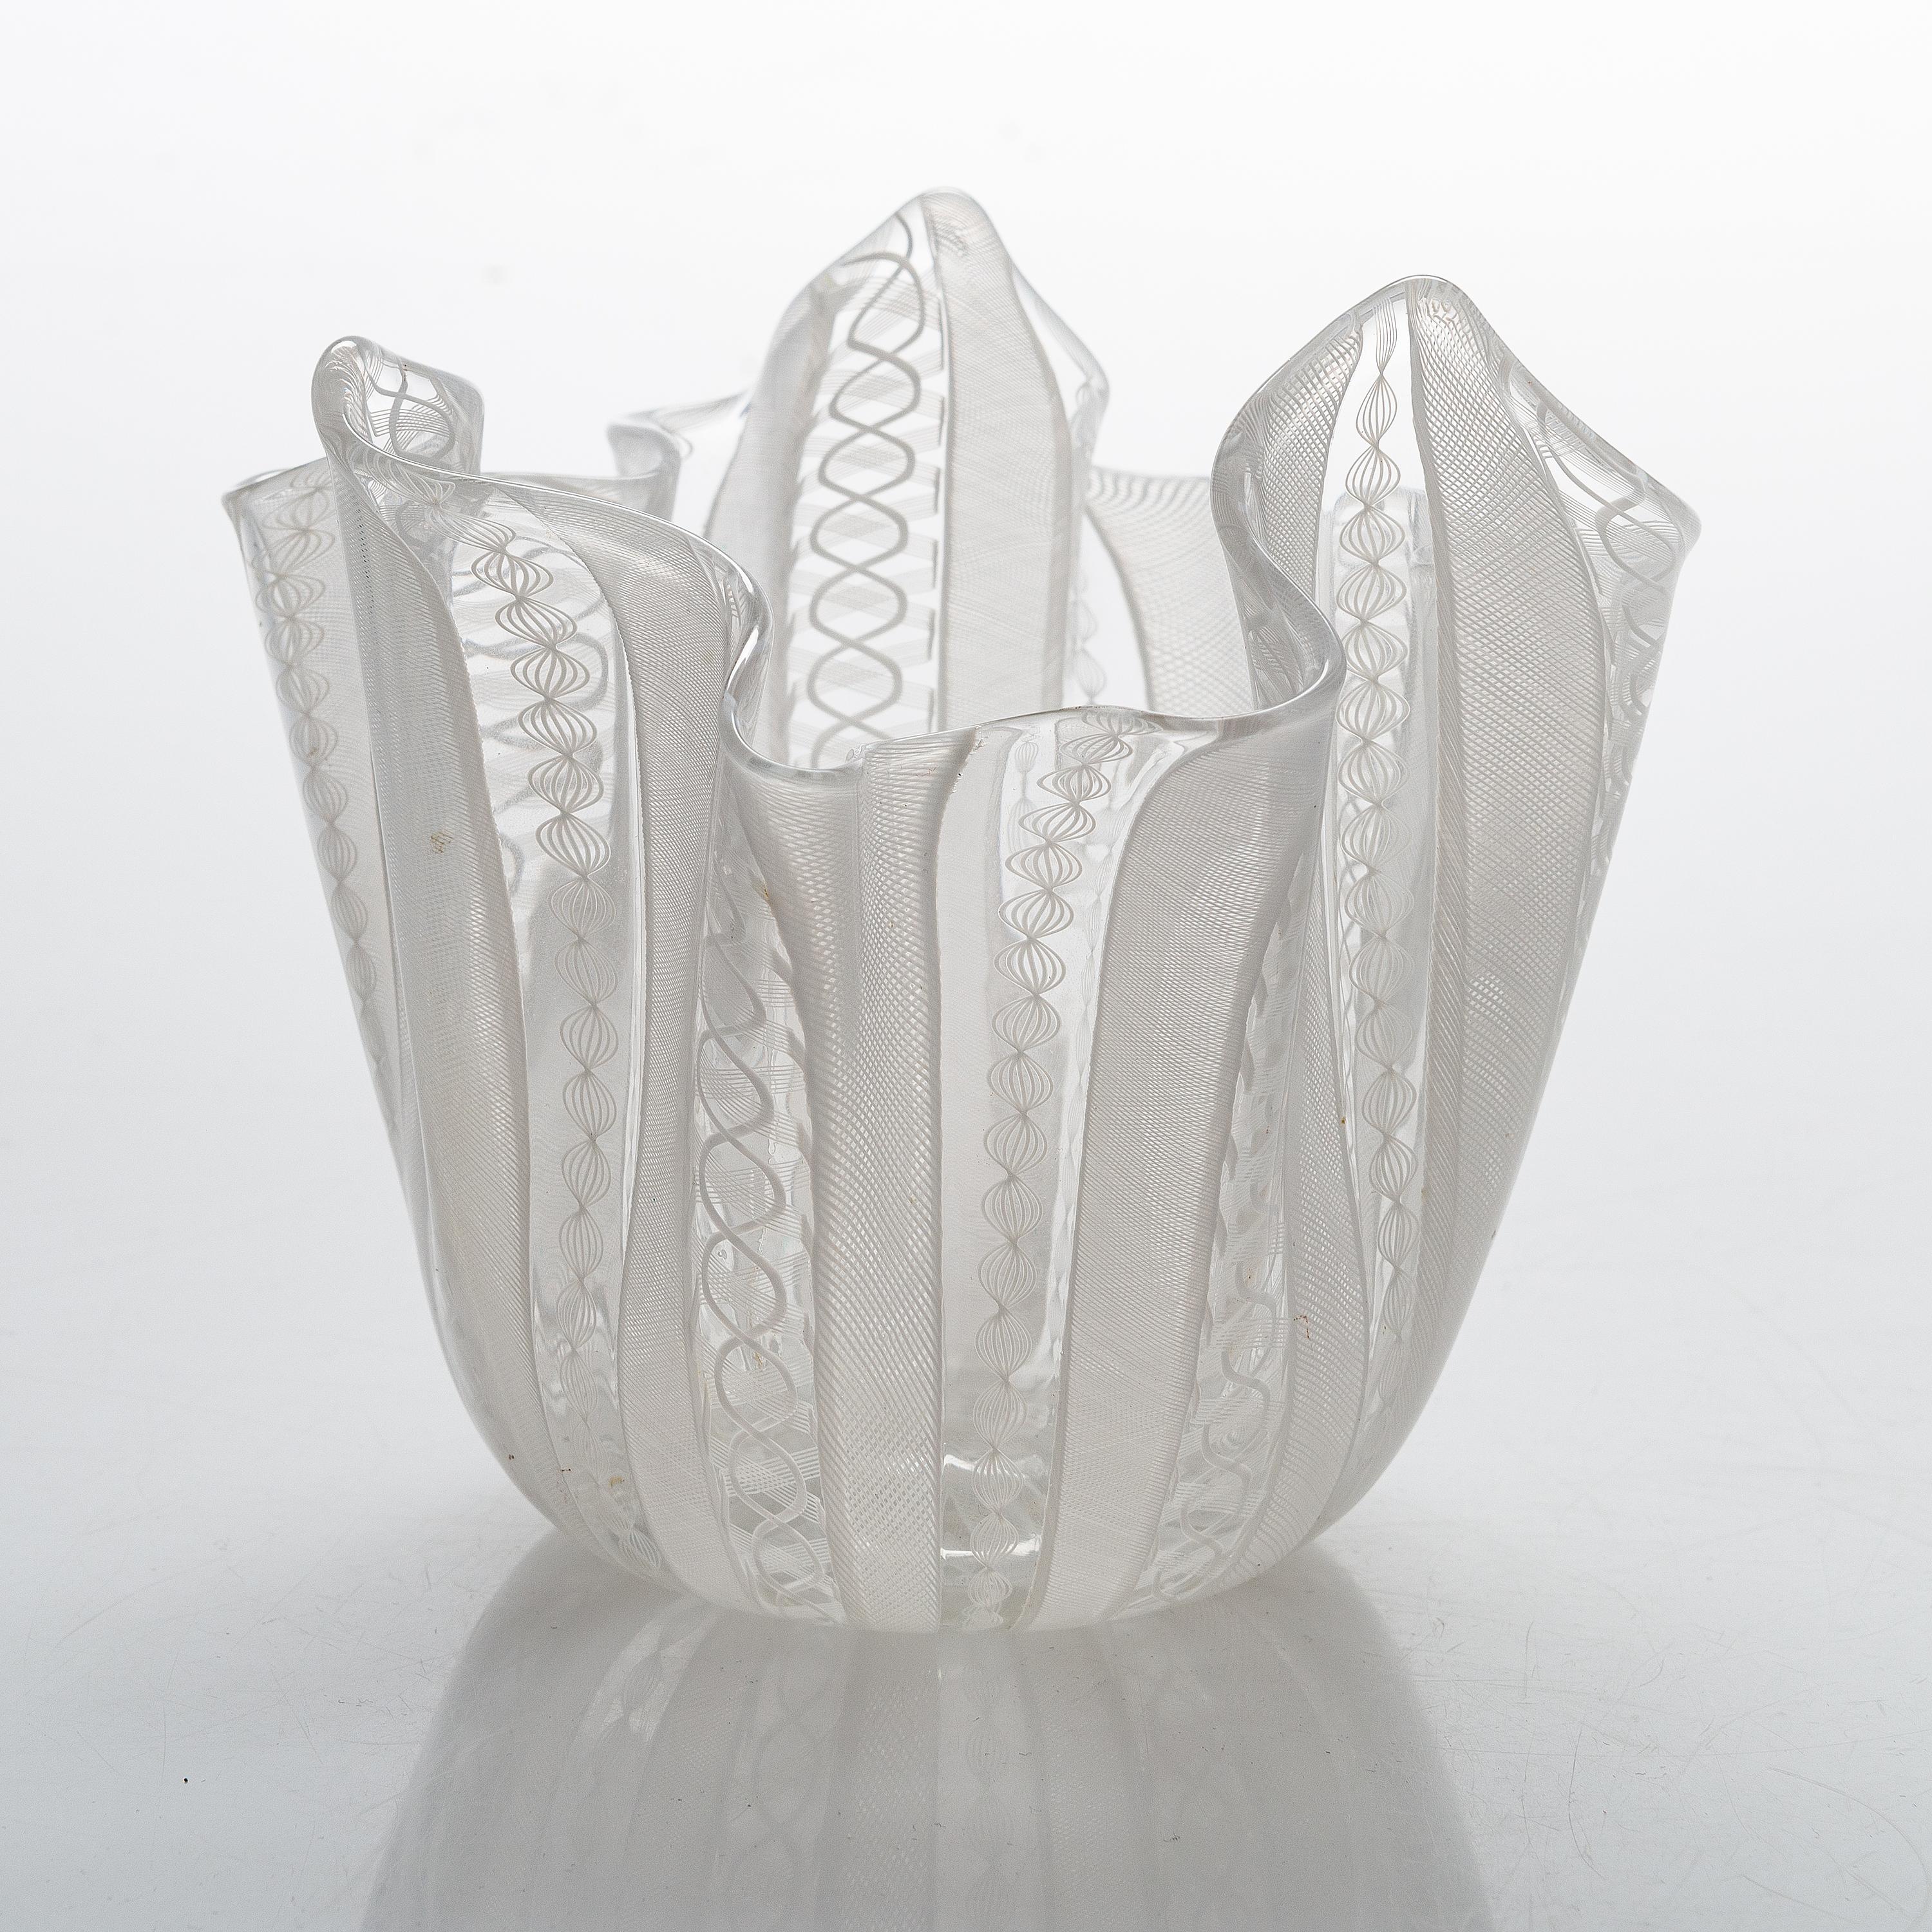 Zwei weiße Taschentuchvasen/-schalen aus filigranem Zanfirico-Glas von Venini, Murano. Diese Vasen/Schalen aus venezianischem Glas zeigen zarte Streifen aus weißem Zanfirico-Filigran. Die Herkunft des anderen Herstellers bleibt zwar unbekannt, aber